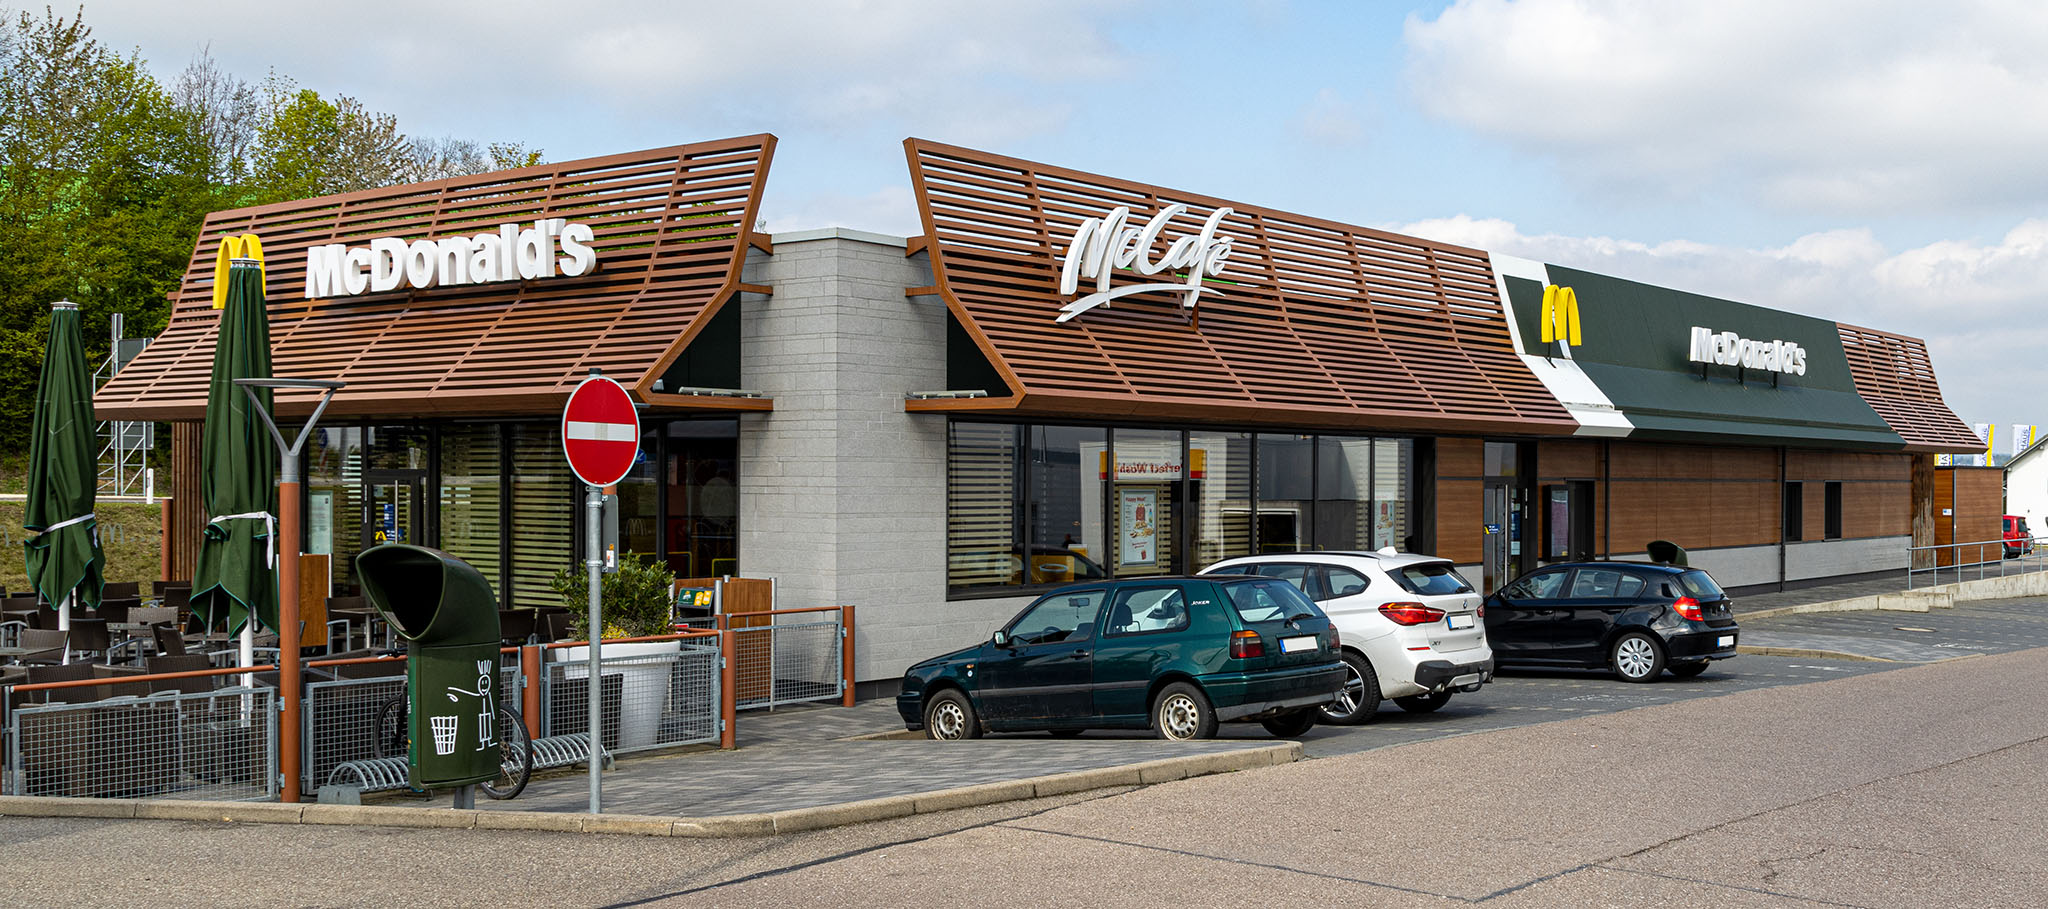 Das McDonald’s-Restaurant in Giengen an der Brenz (Am Buehlfeld)